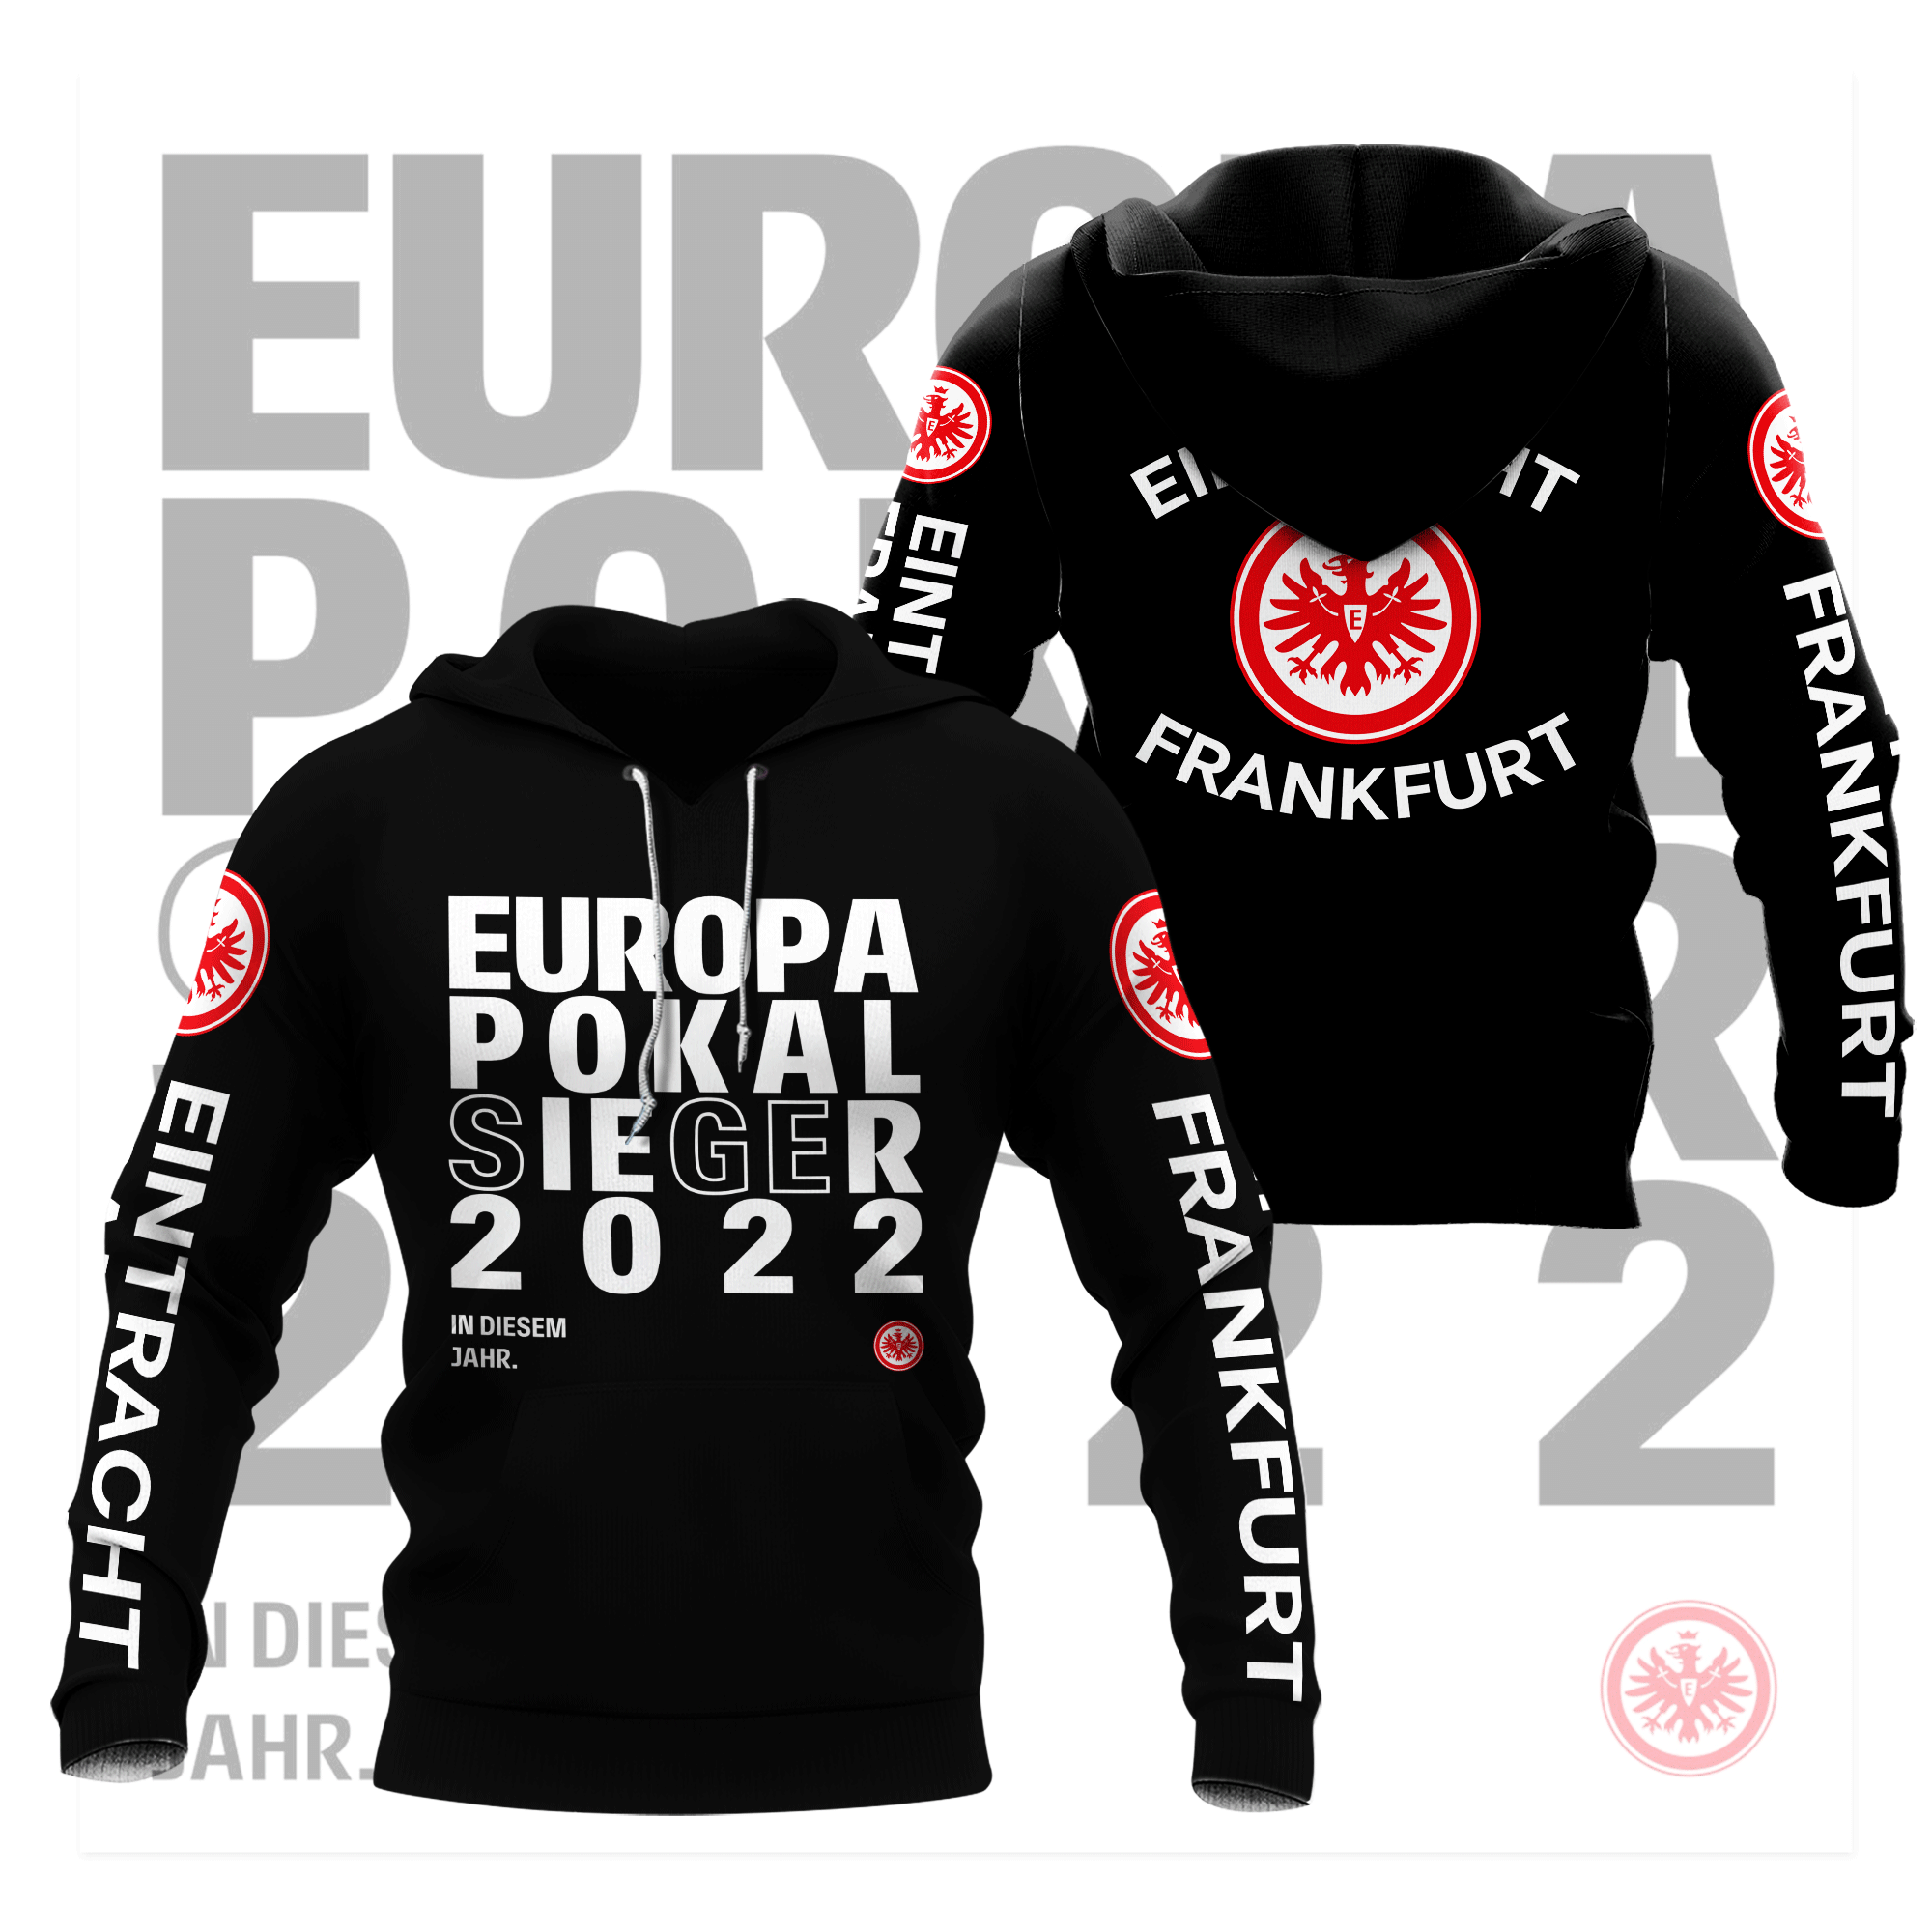 HOT Eintracht Frankfurt Europapokal Sieger 2022 Black 3D Print Hoodie, Shirt2